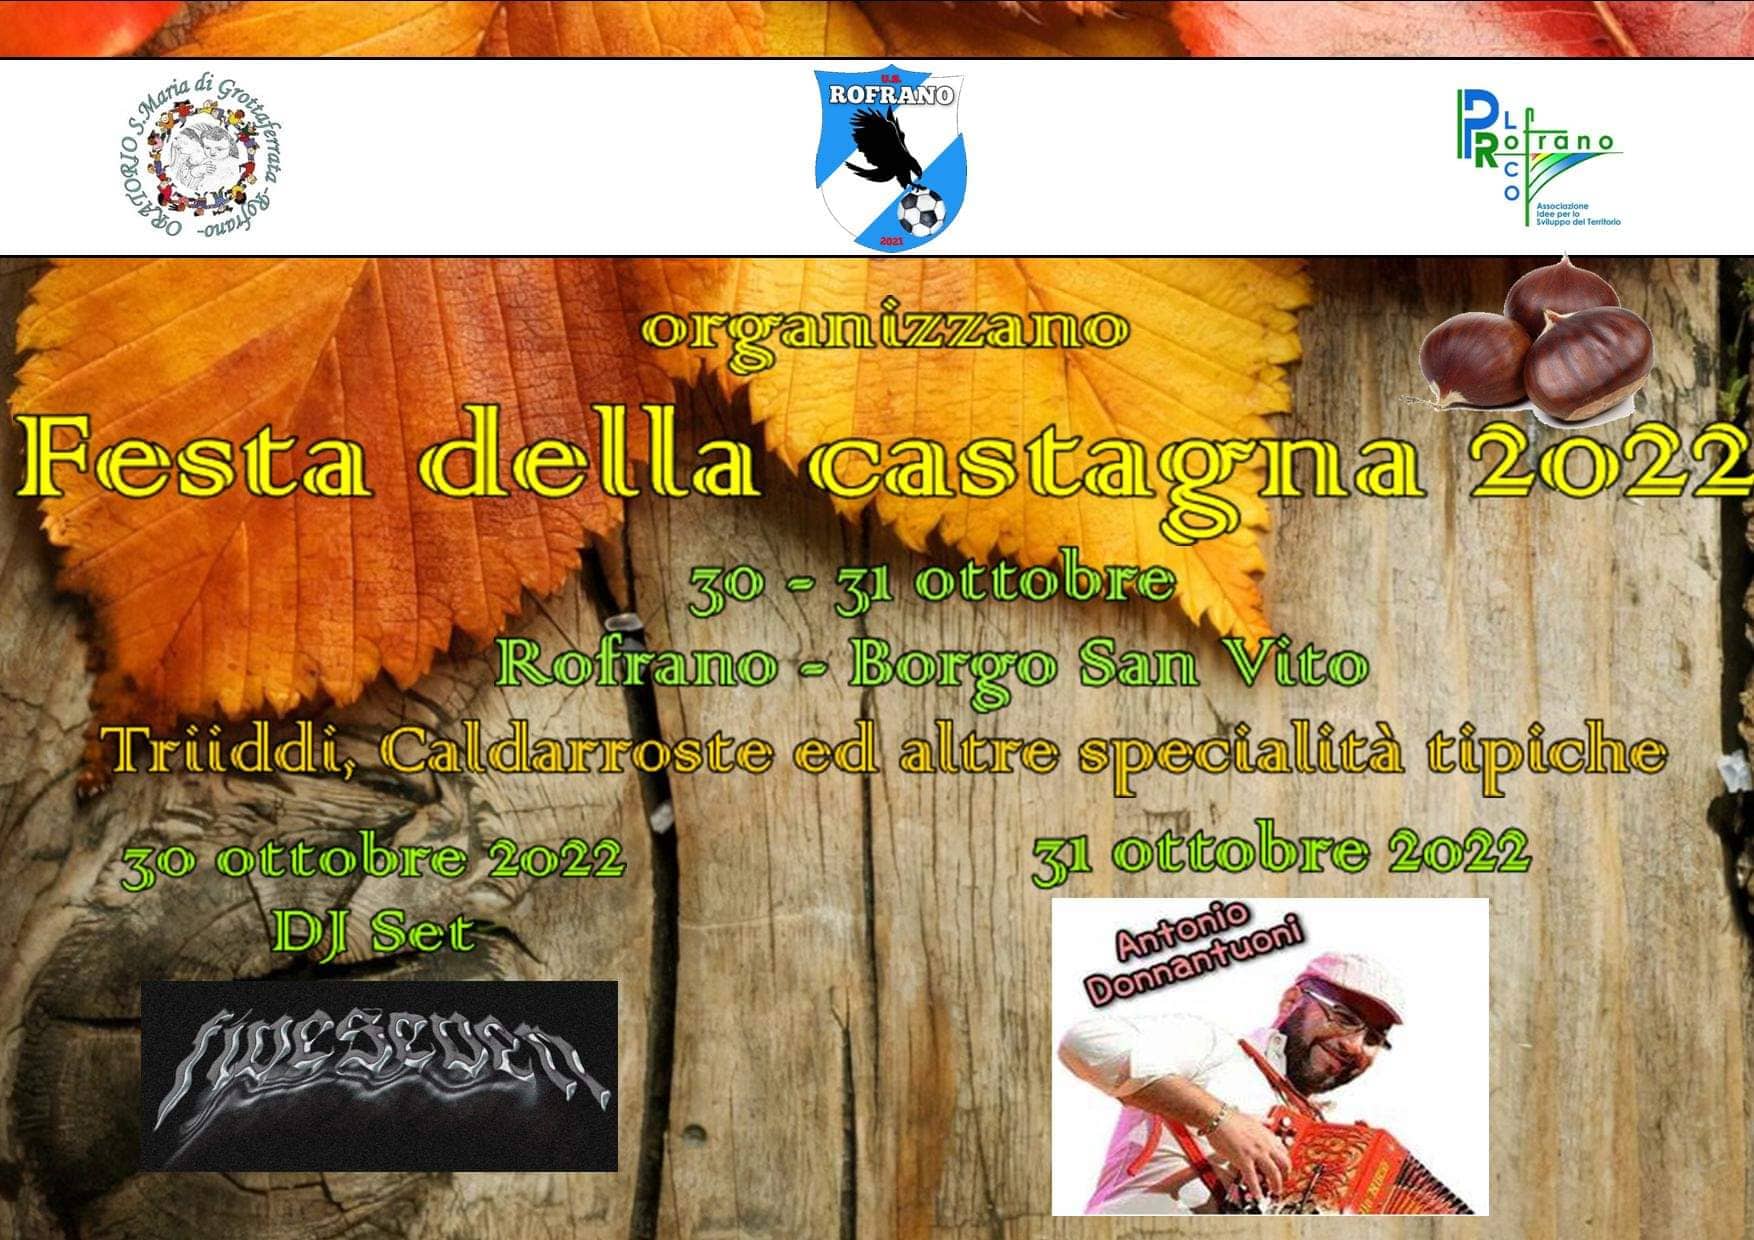 Rofrano celebra l’autunno con la “Festa della castagna”: week end tra caldarroste e musica